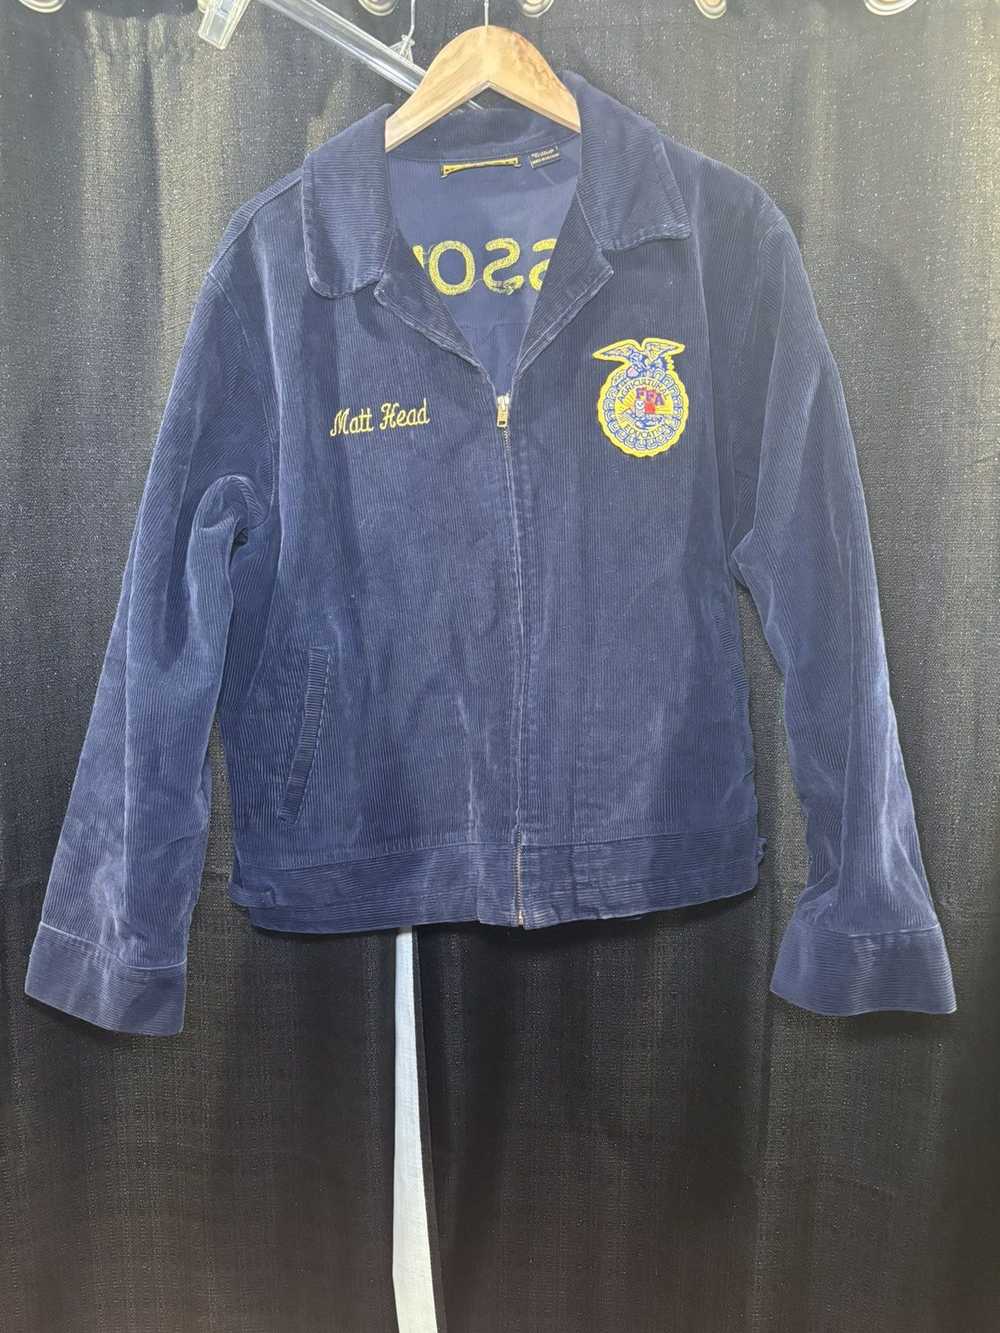 Vintage Vintage FFA jacket - image 2